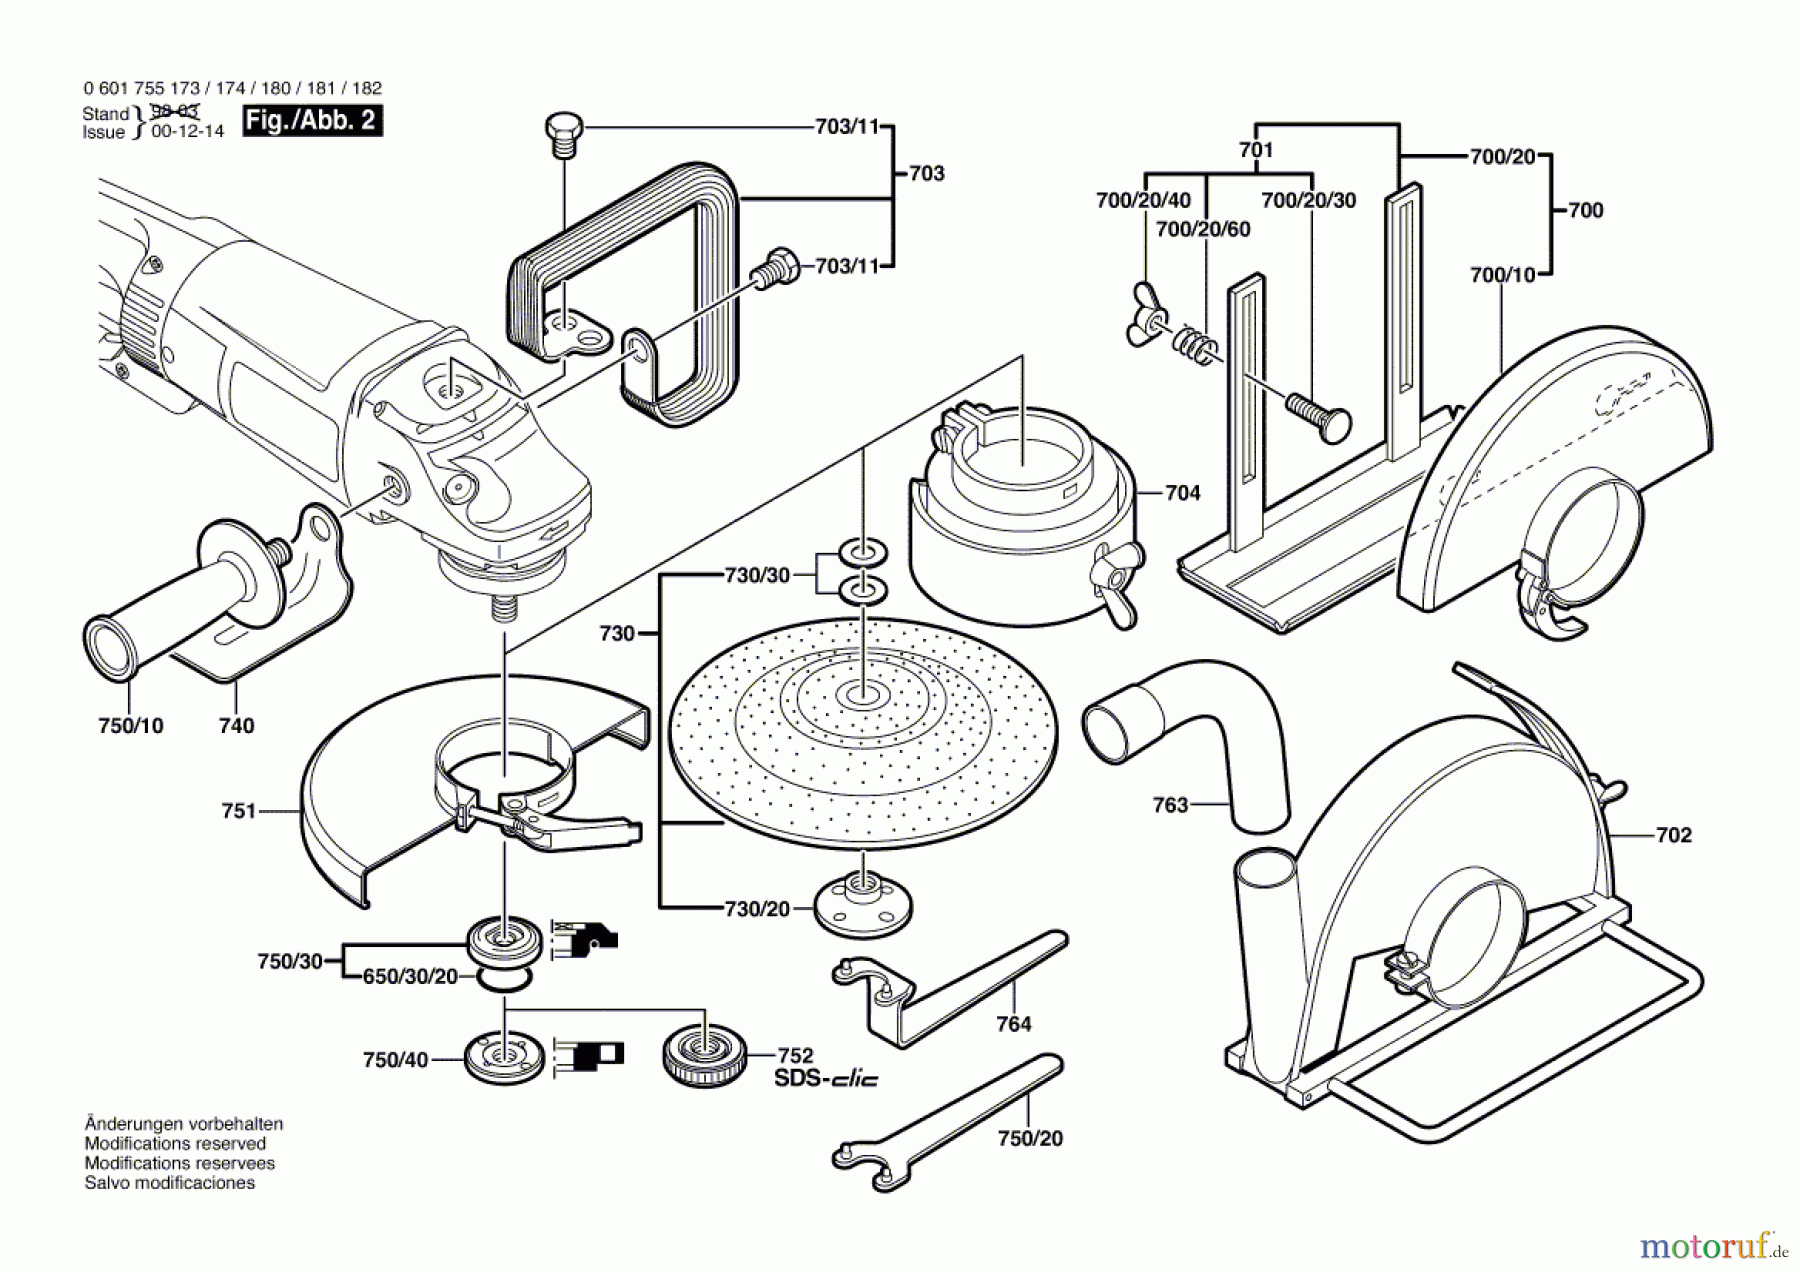  Bosch Werkzeug Winkelschleifer GWS 25-180 Seite 2